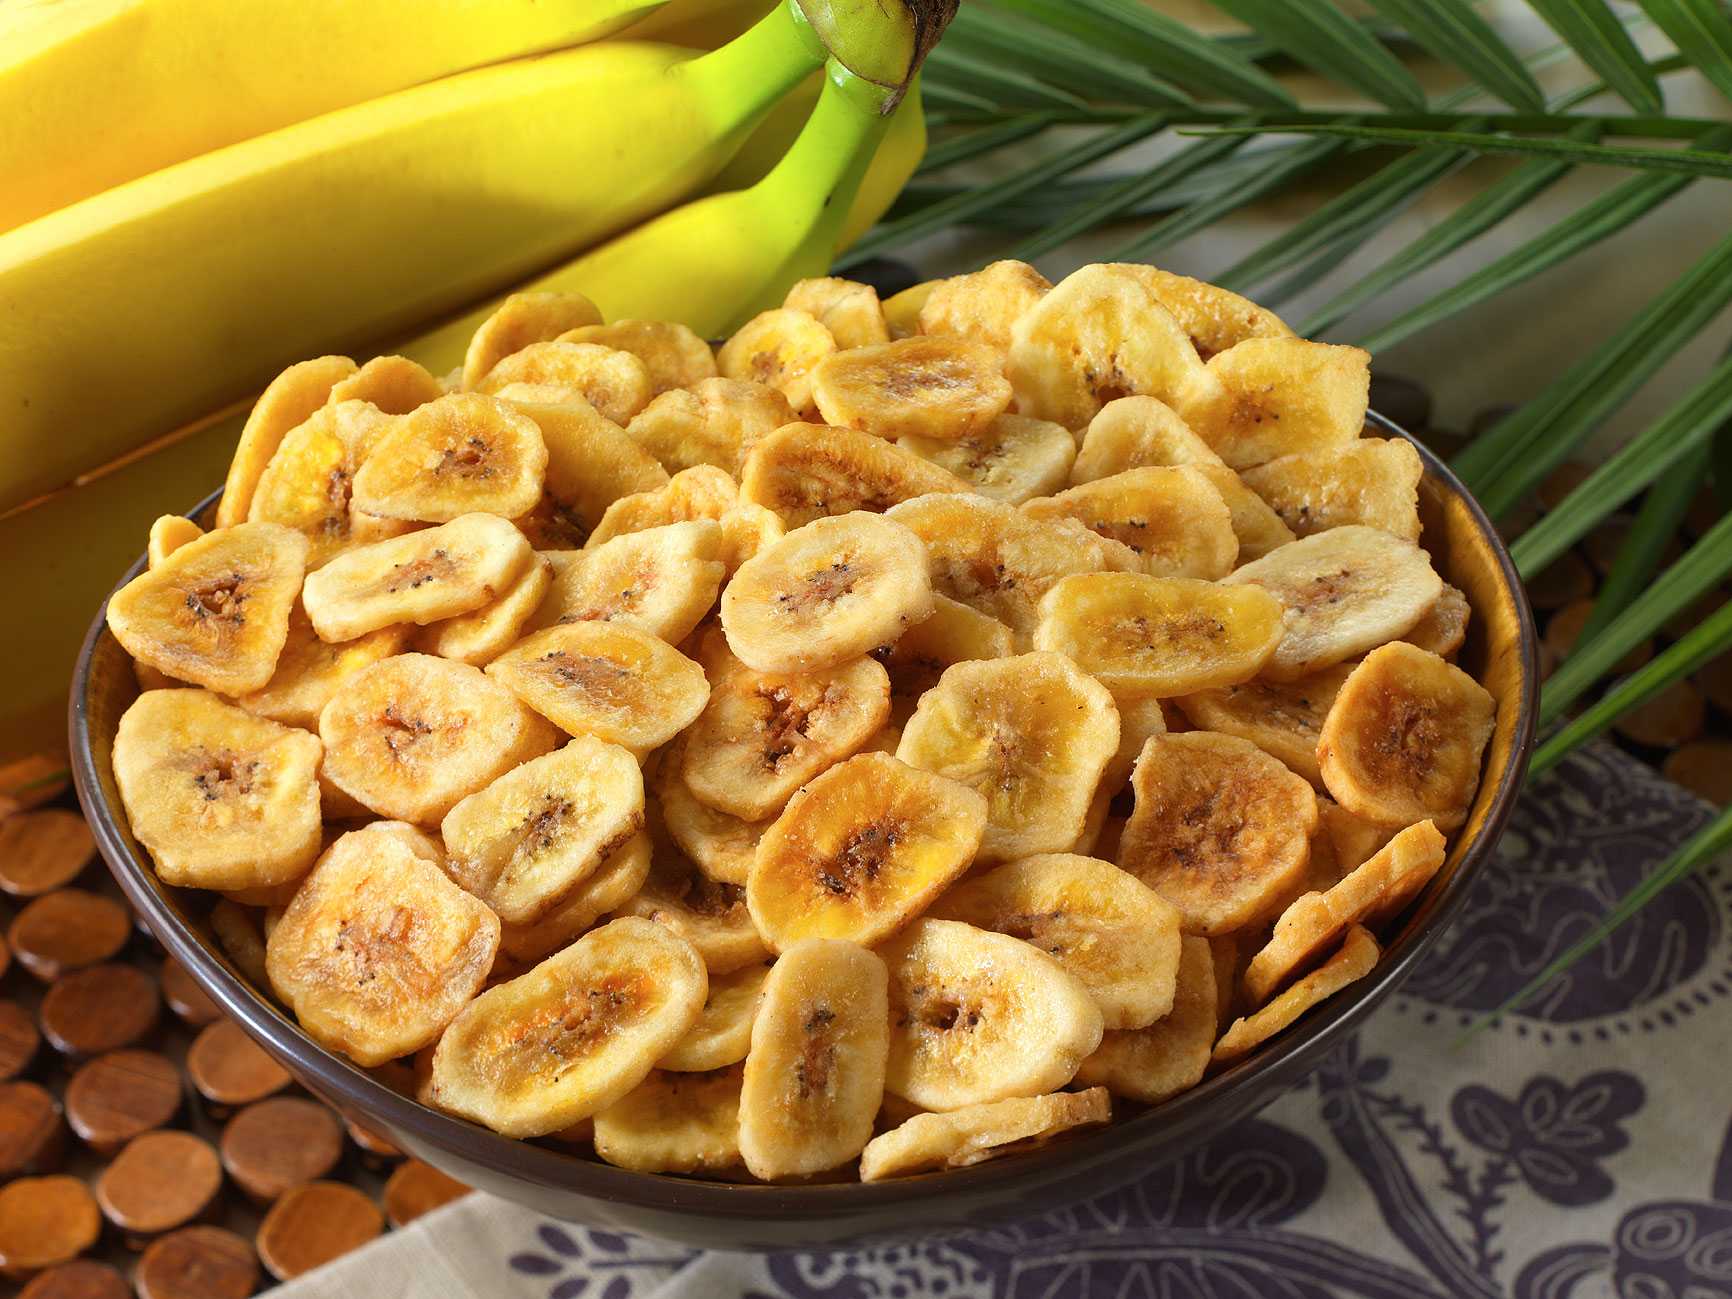 Как сделать хрустящие, вкусные и ароматные банановые чипсы в домашних условиях Все просто: нужны бананы, место для сушки и время